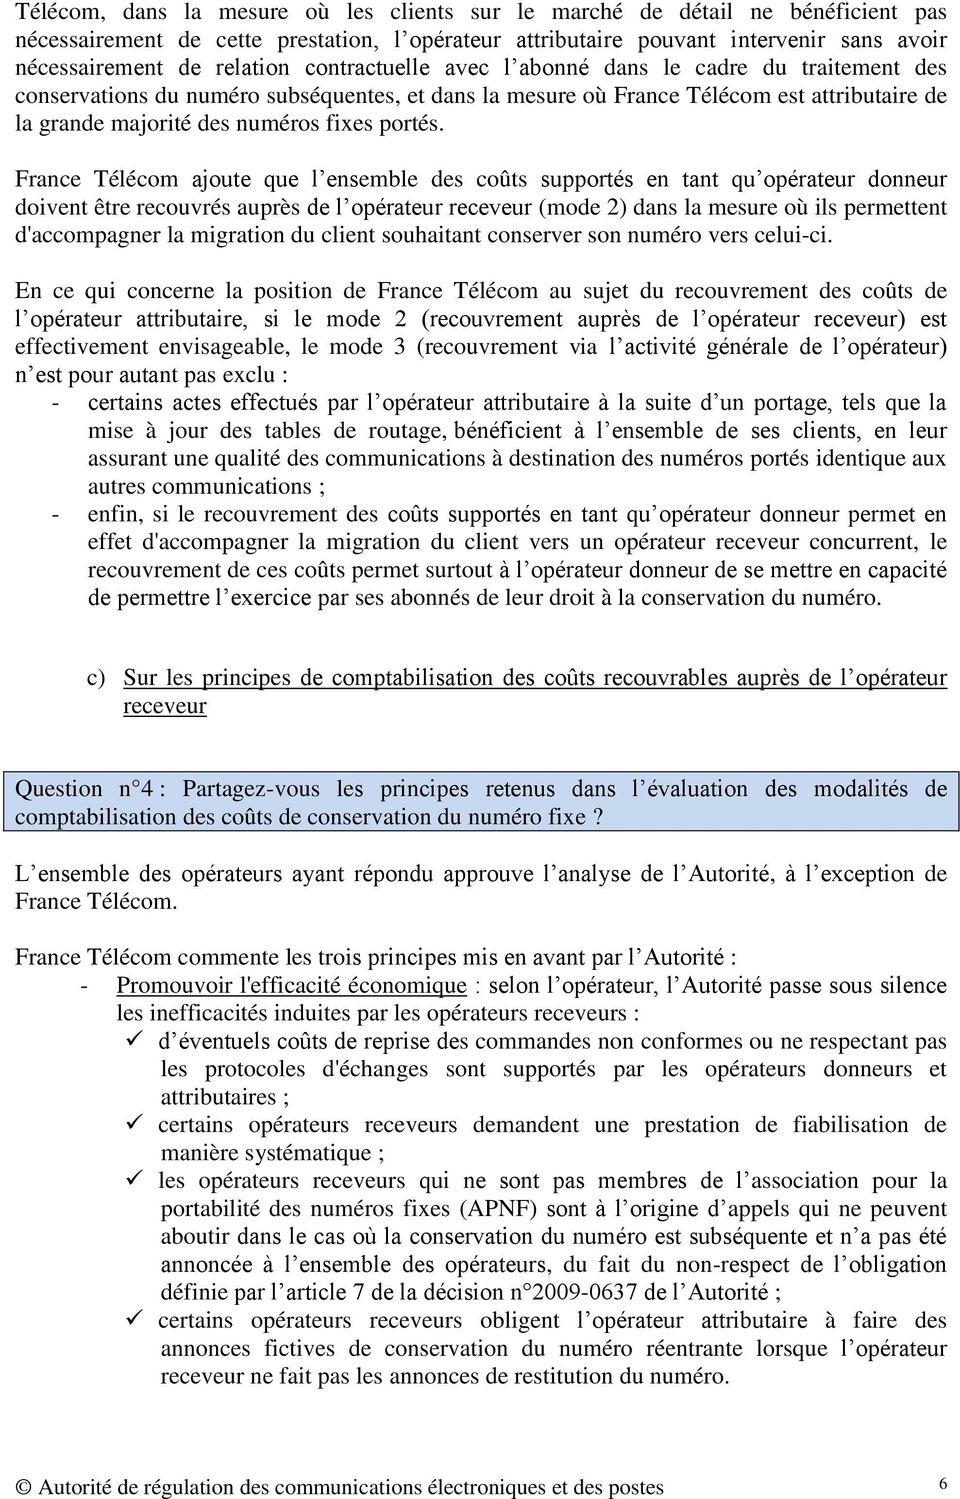 France Télécom ajoute que l ensemble des coûts supportés en tant qu opérateur donneur doivent être recouvrés auprès de l opérateur receveur (mode 2) dans la mesure où ils permettent d'accompagner la